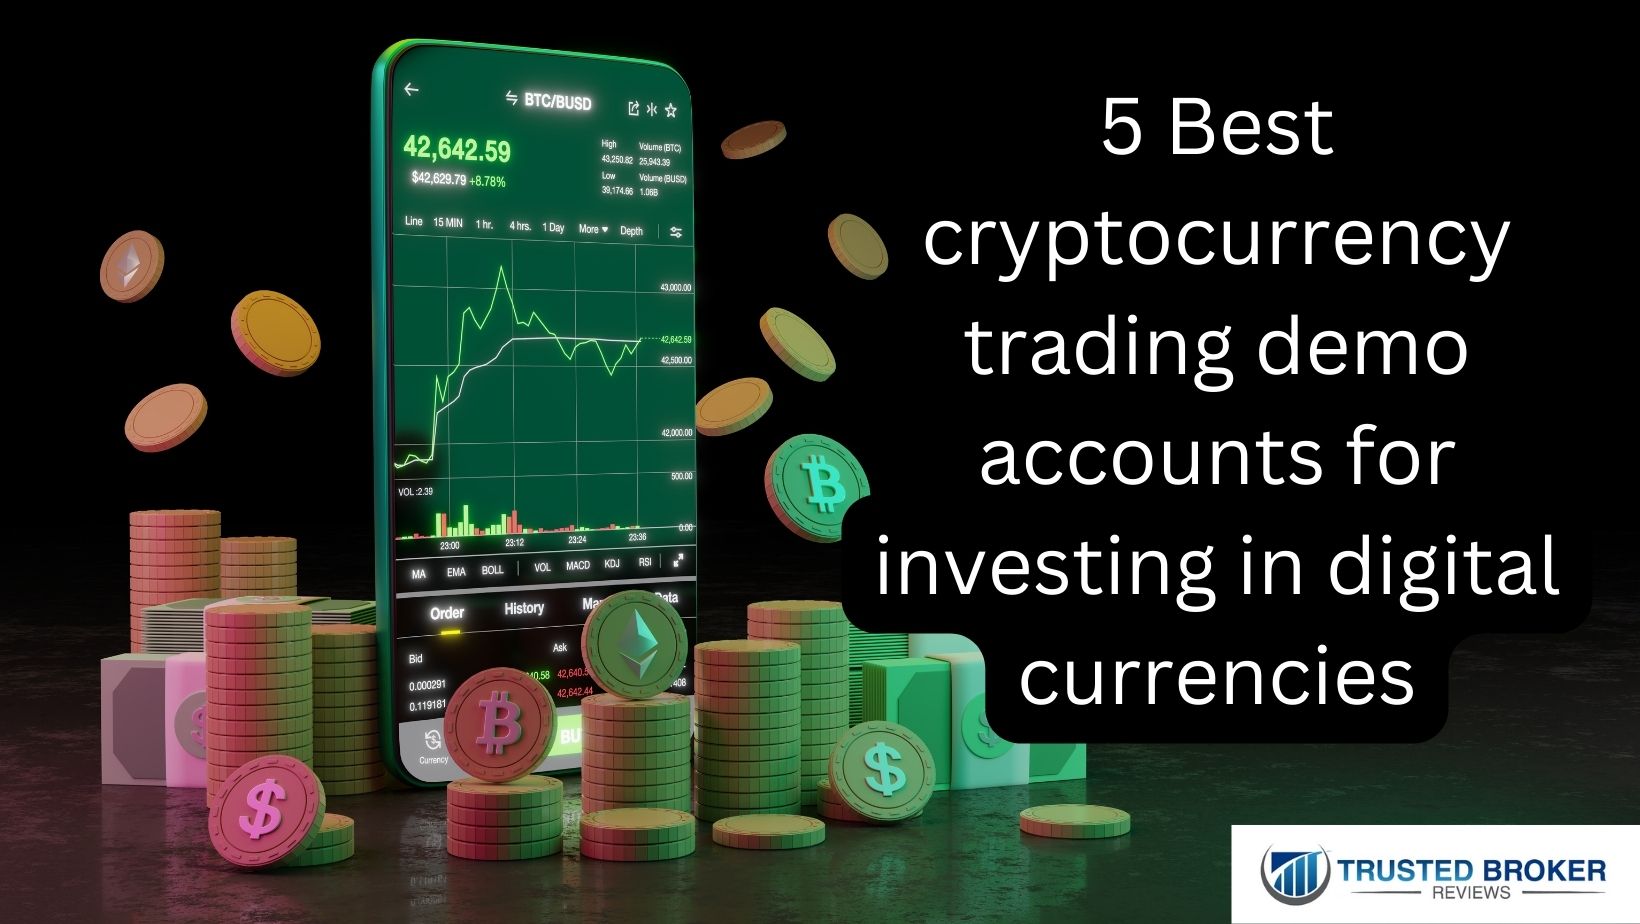 5 Bedste cryptocurrency trading demo tegner sig for at investere i digitale valutaer